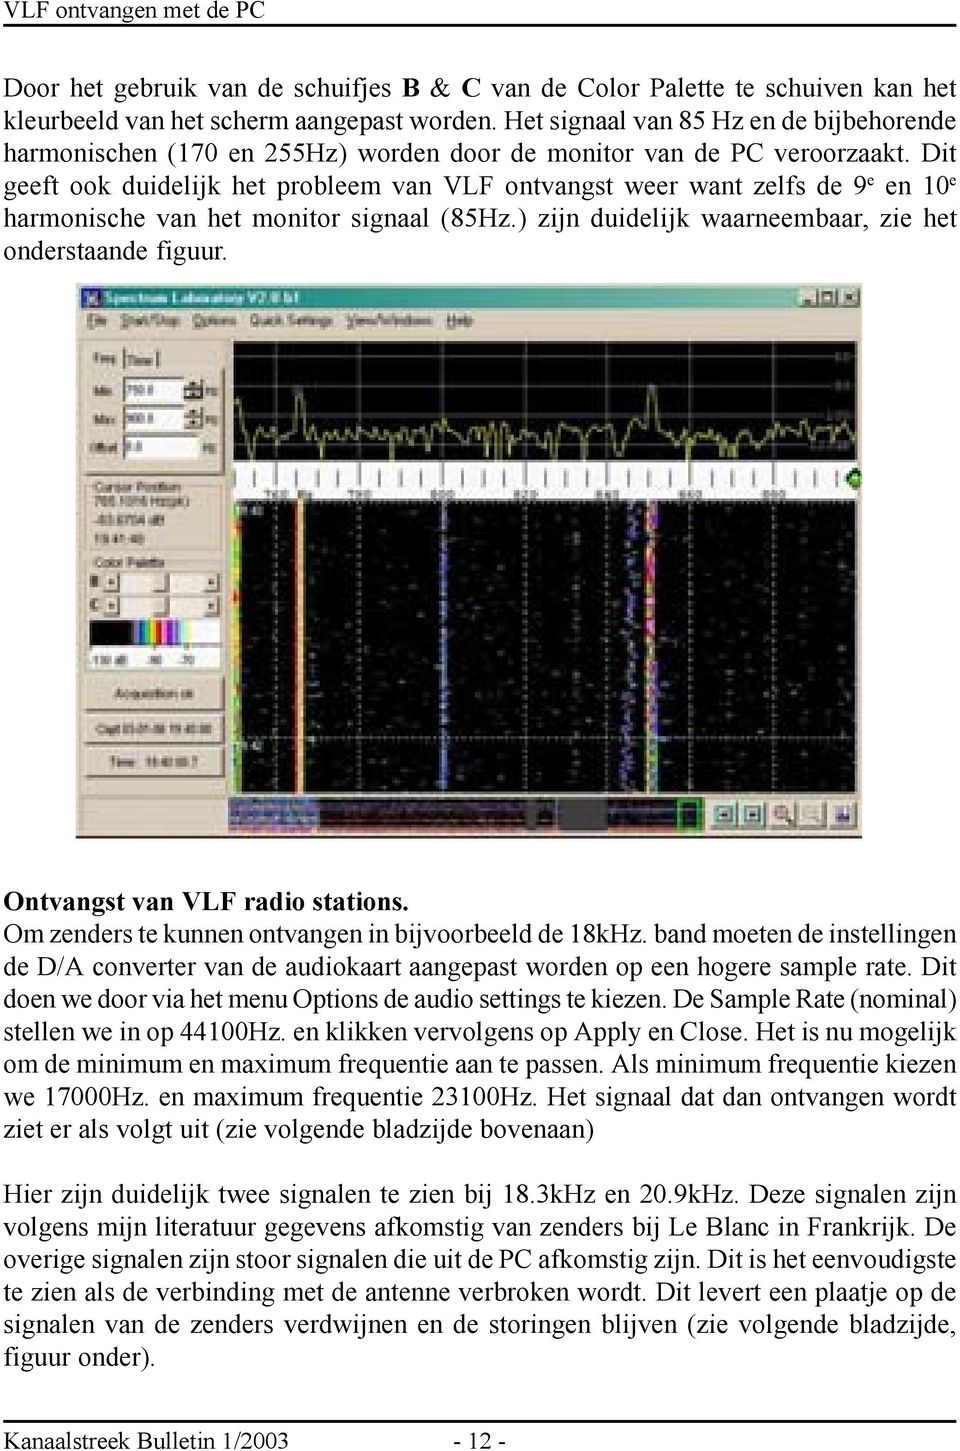 Dit geeft ook duidelijk het probleem van VLF ontvangst weer want zelfs de 9 e en 10 e harmonische van het monitor signaal (85Hz.) zijn duidelijk waarneembaar, zie het onderstaande figuur.